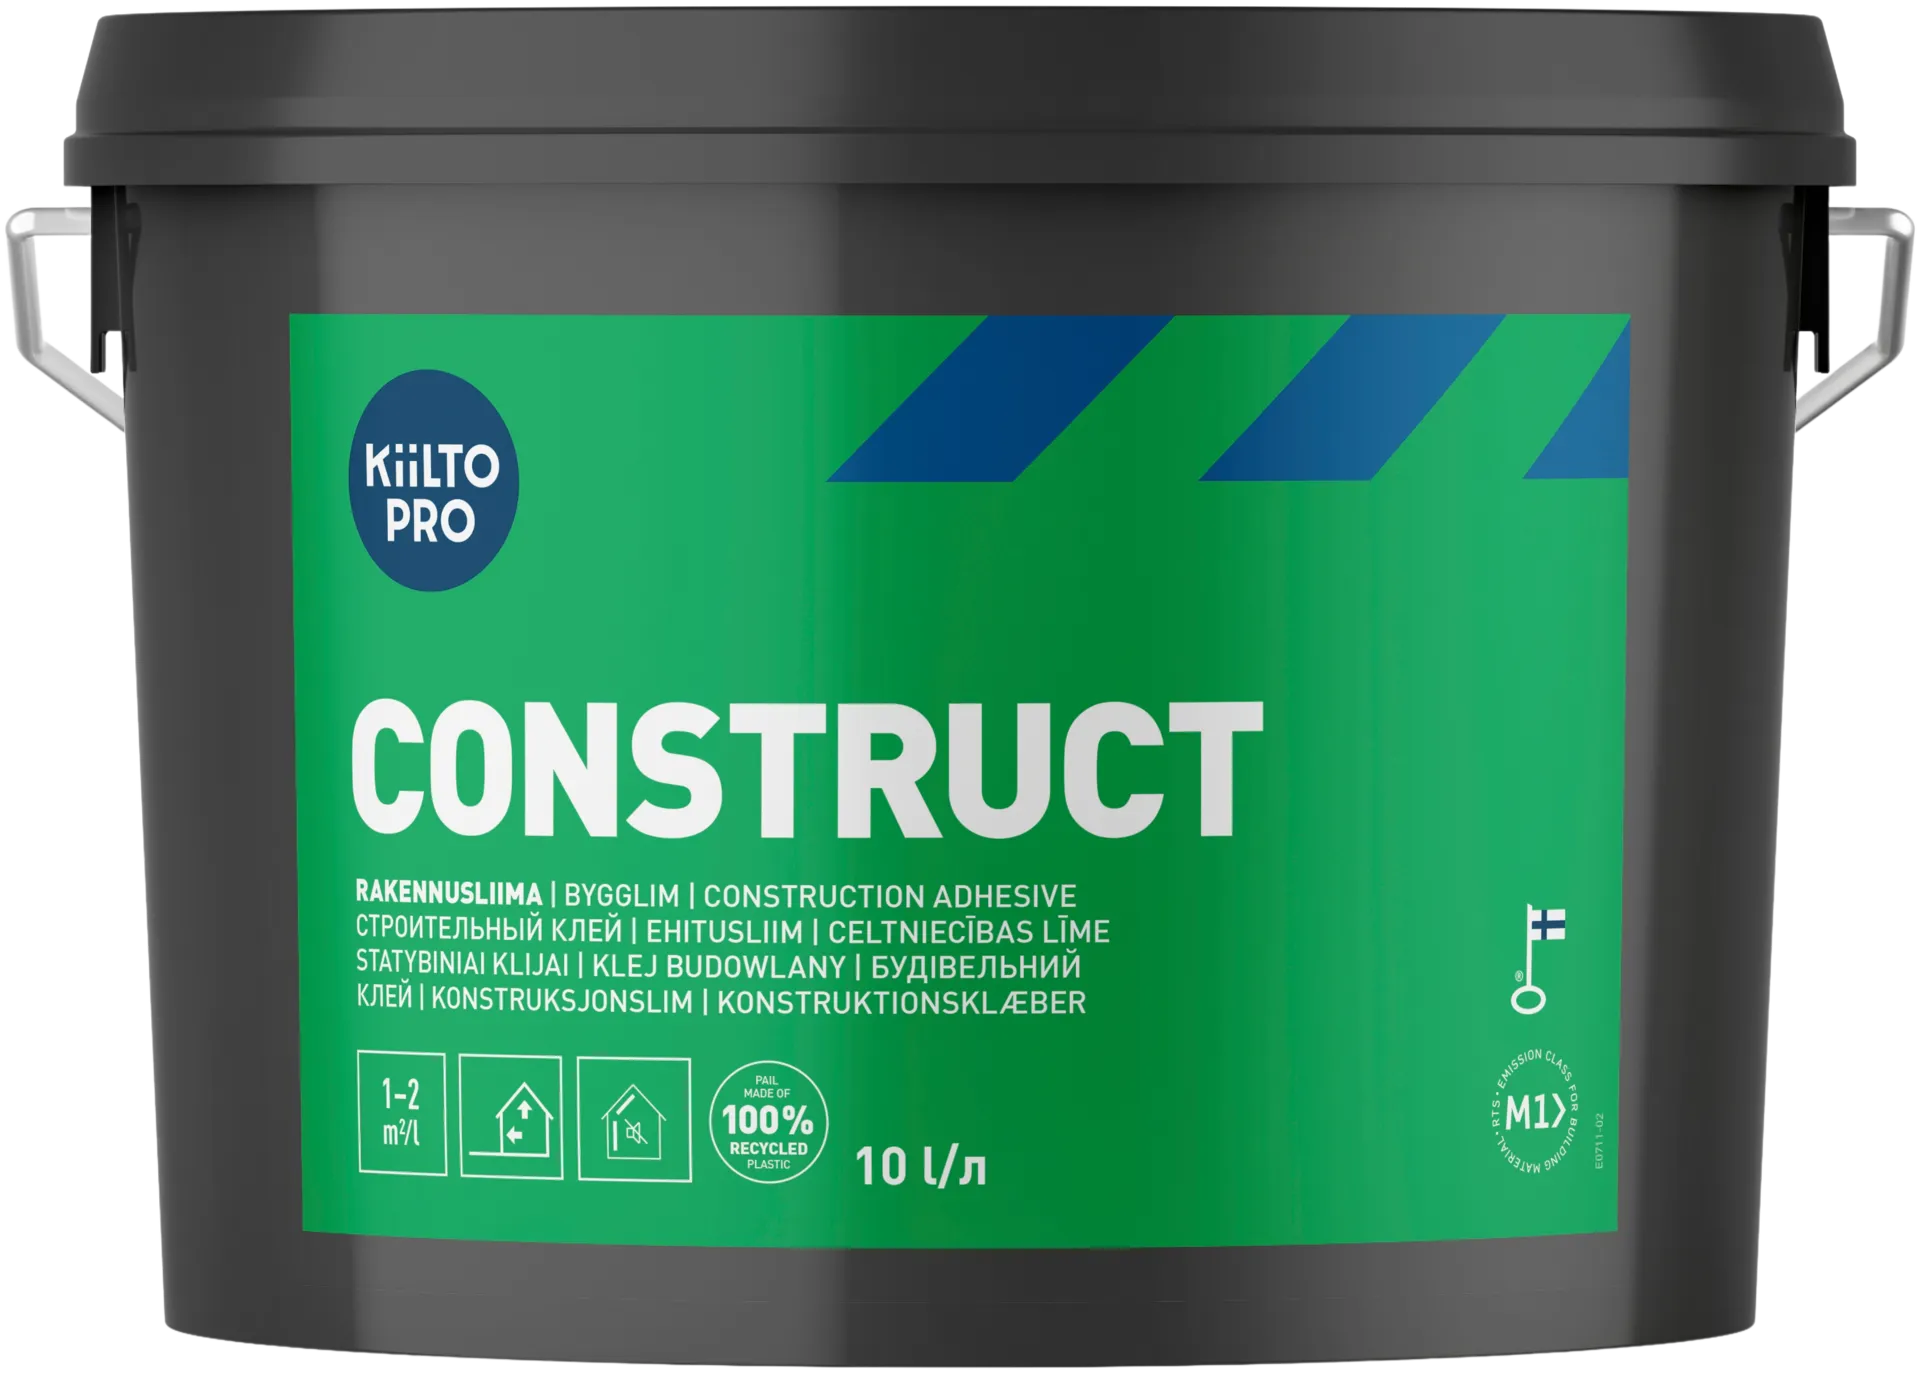 Kiilto Pro rakennusliima Construct 10 l